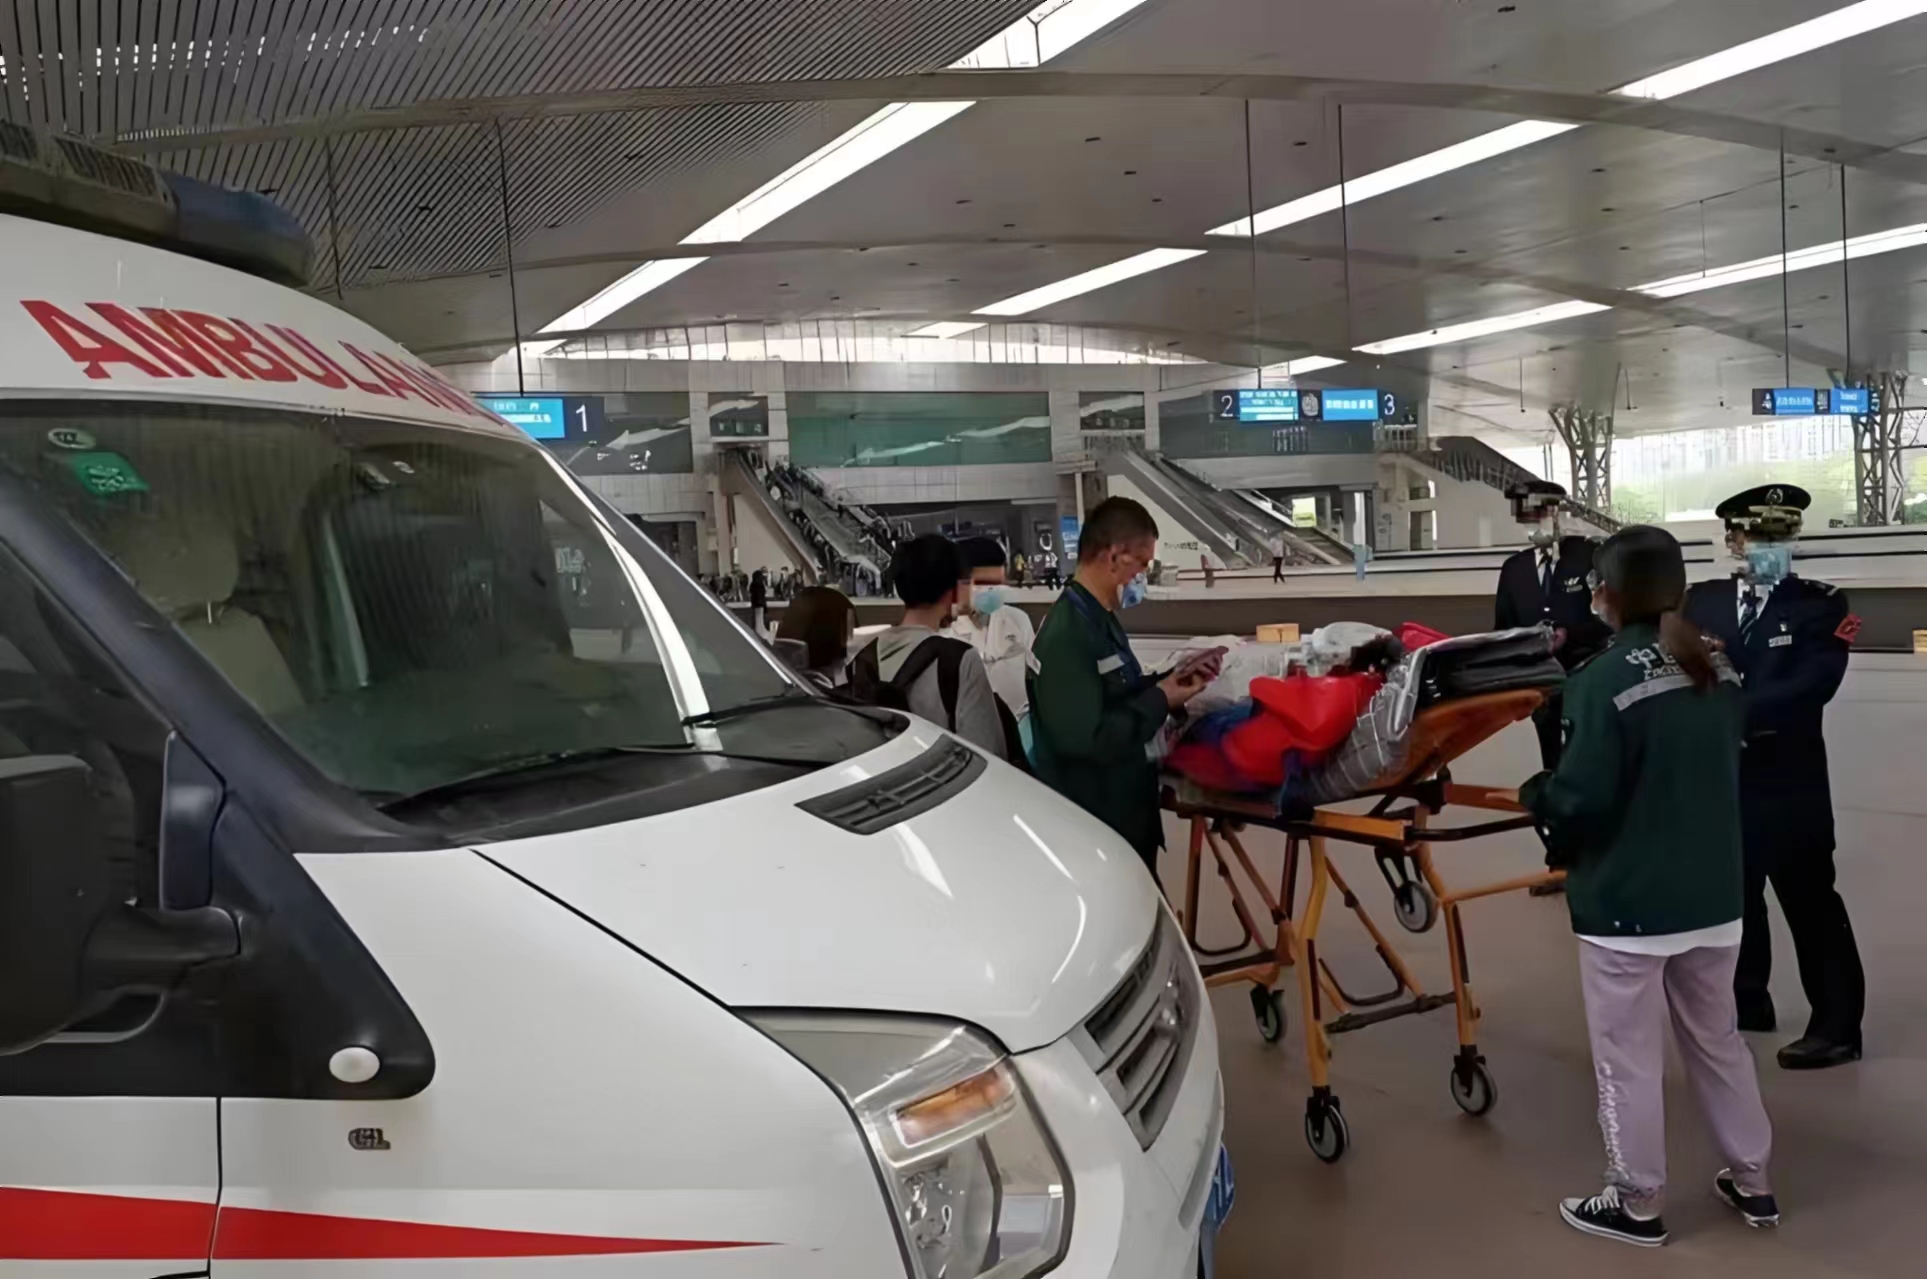 黄山私人救护车转运-120救护车出租-快速出车